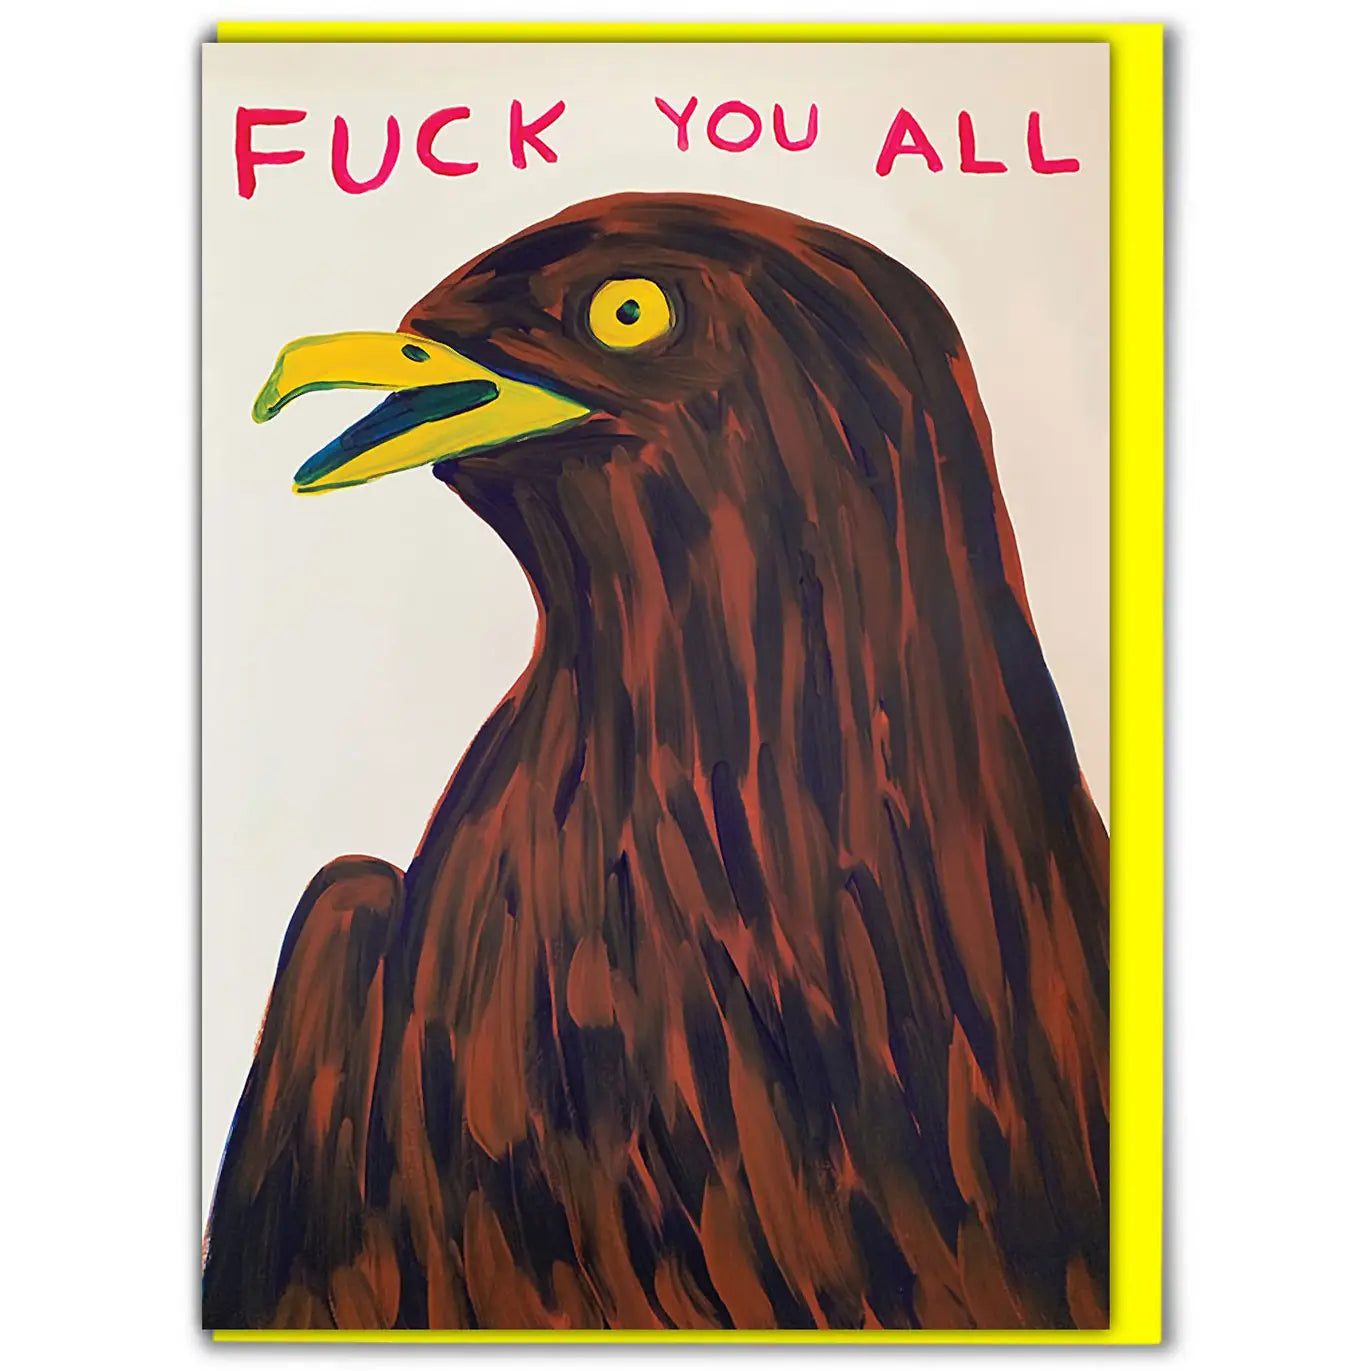 Fuck you all eagle card